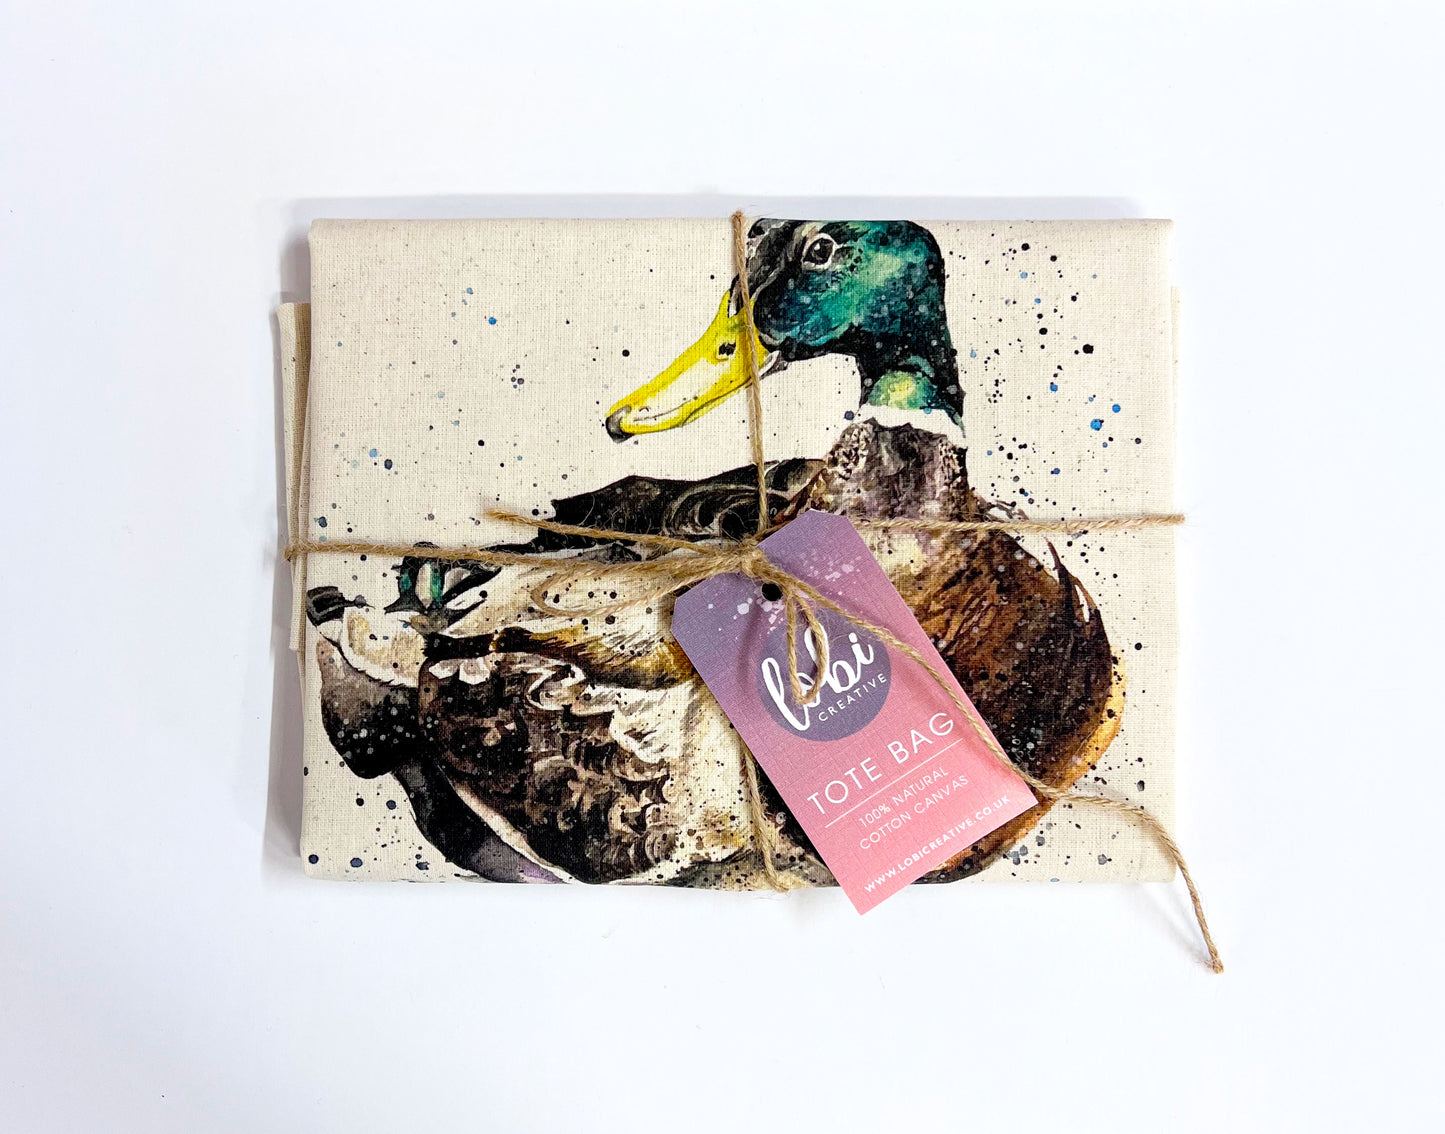 Watercolour Duck Cotton Tote Bag